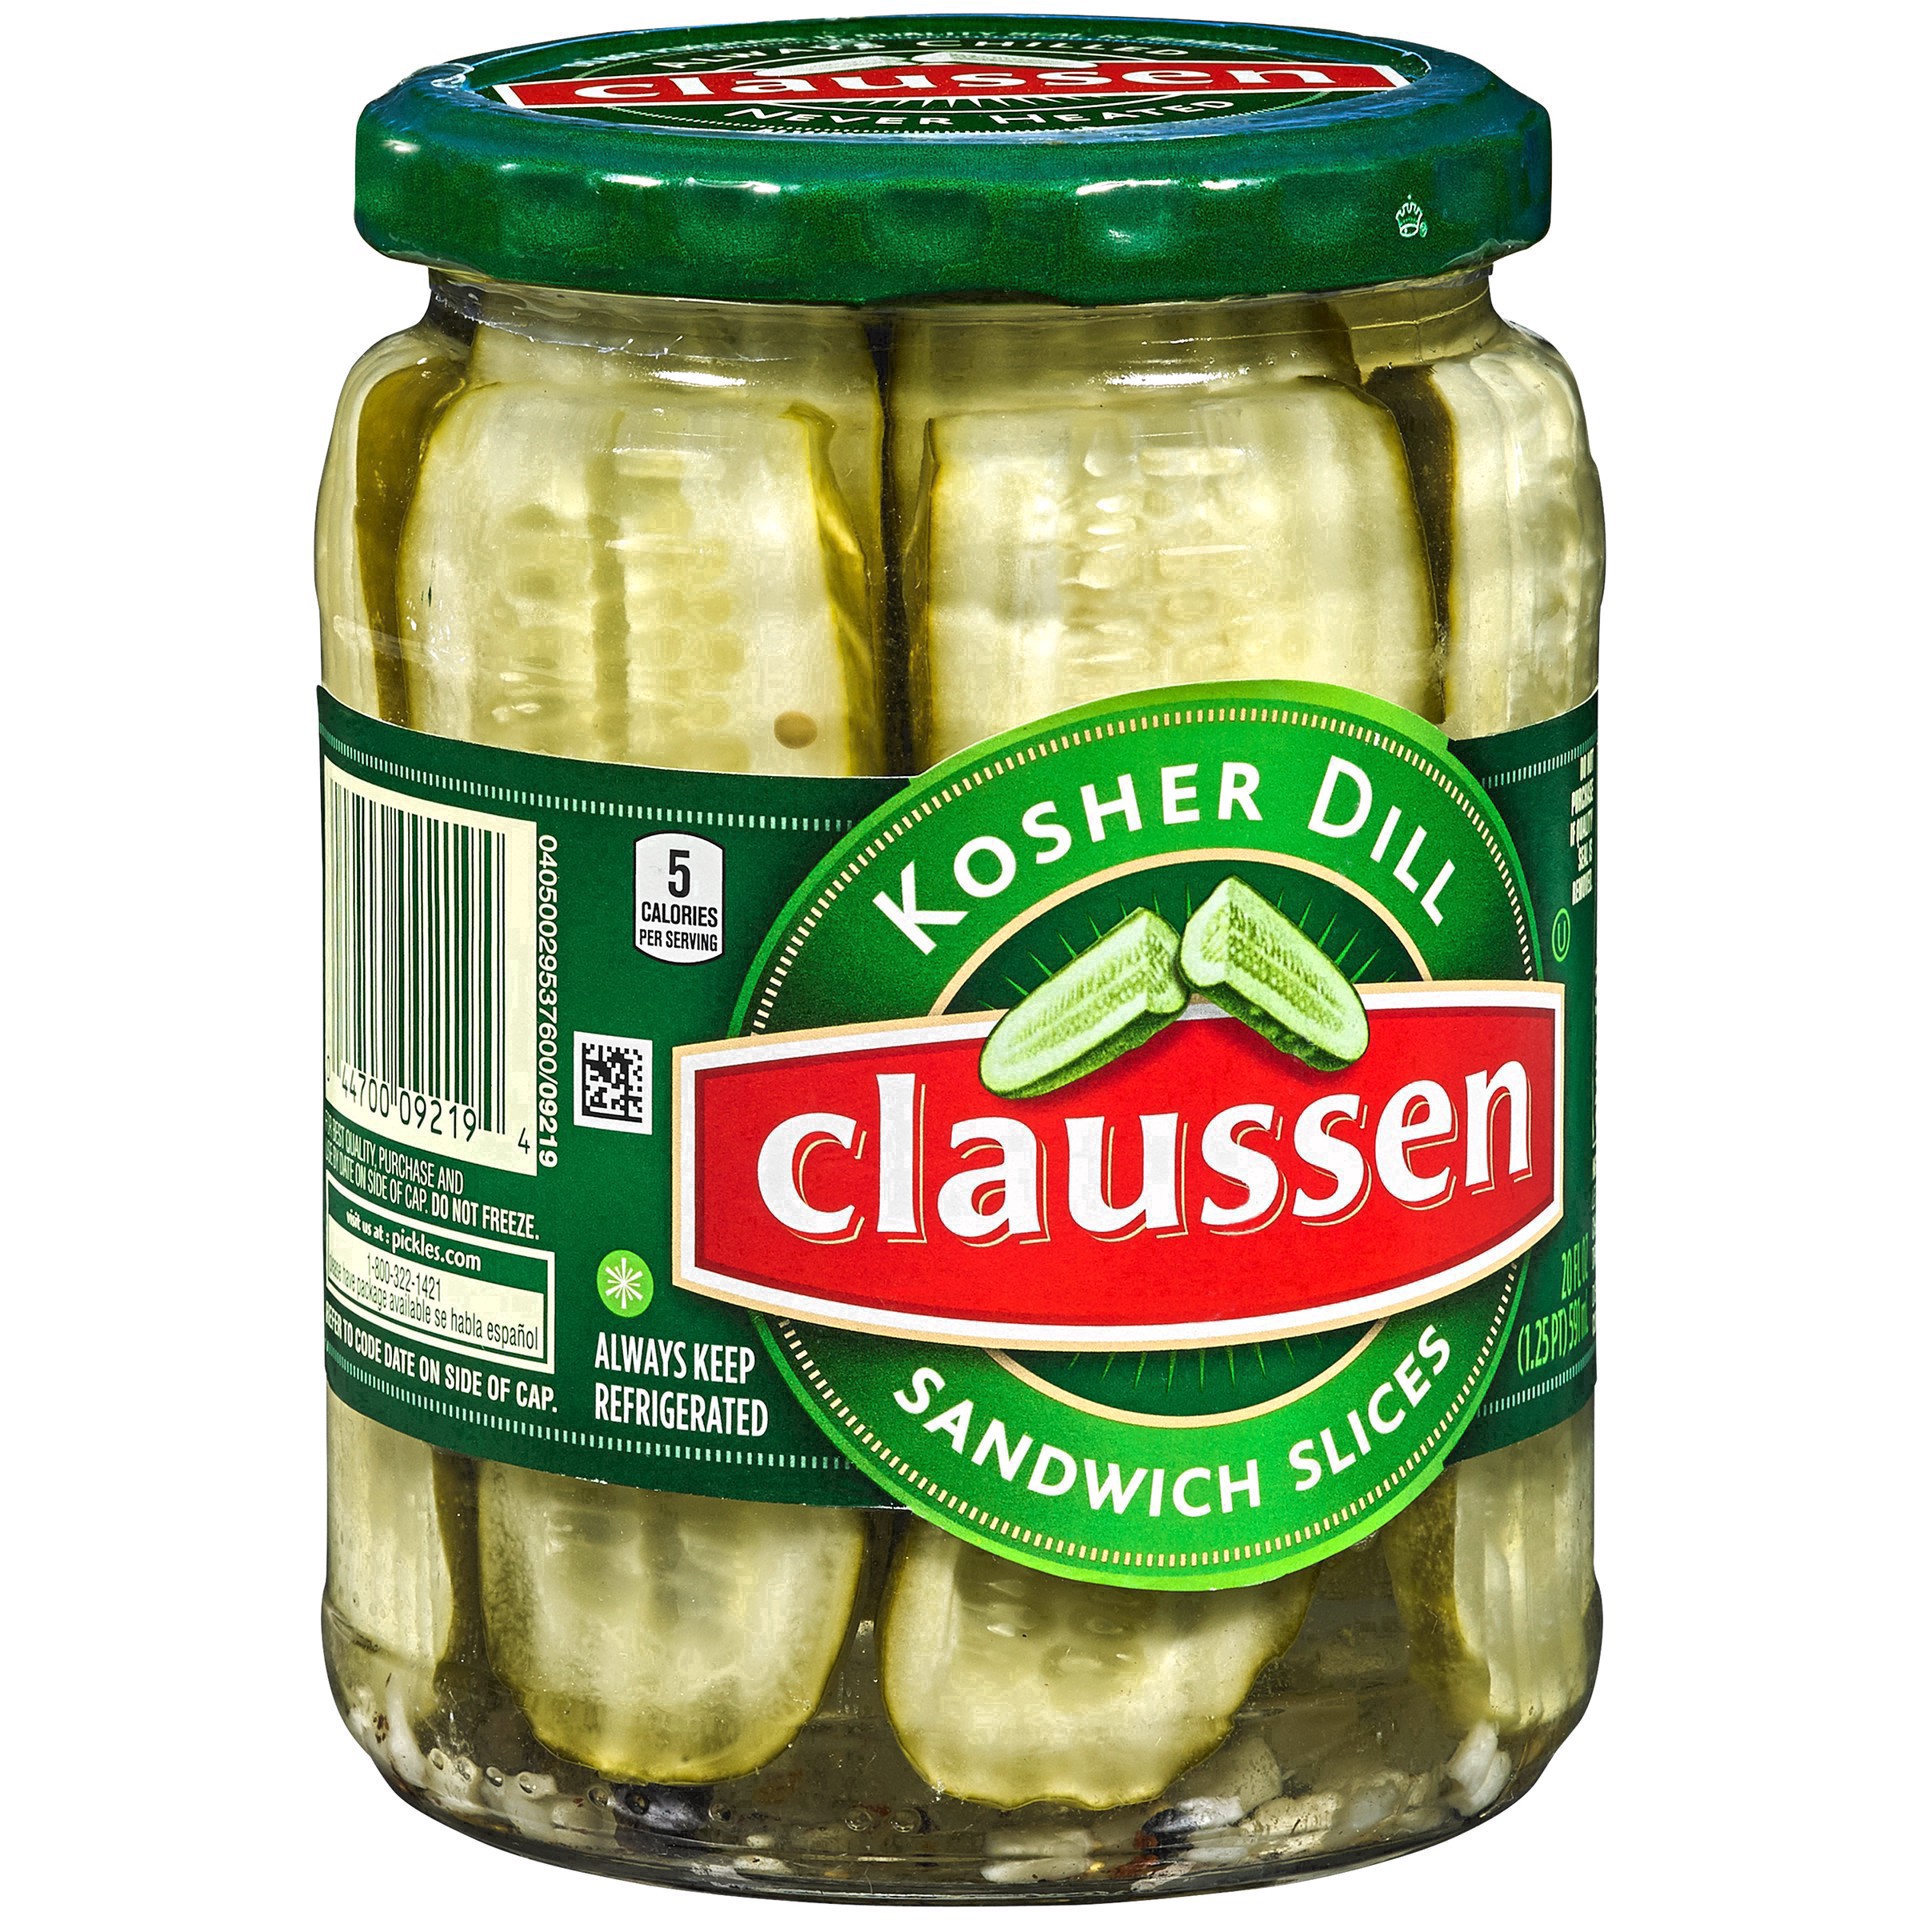 slide 23 of 144, Claussen Kosher Dill Pickle Sandwich Slices, 20 fl. oz. Jar, 20 fl oz